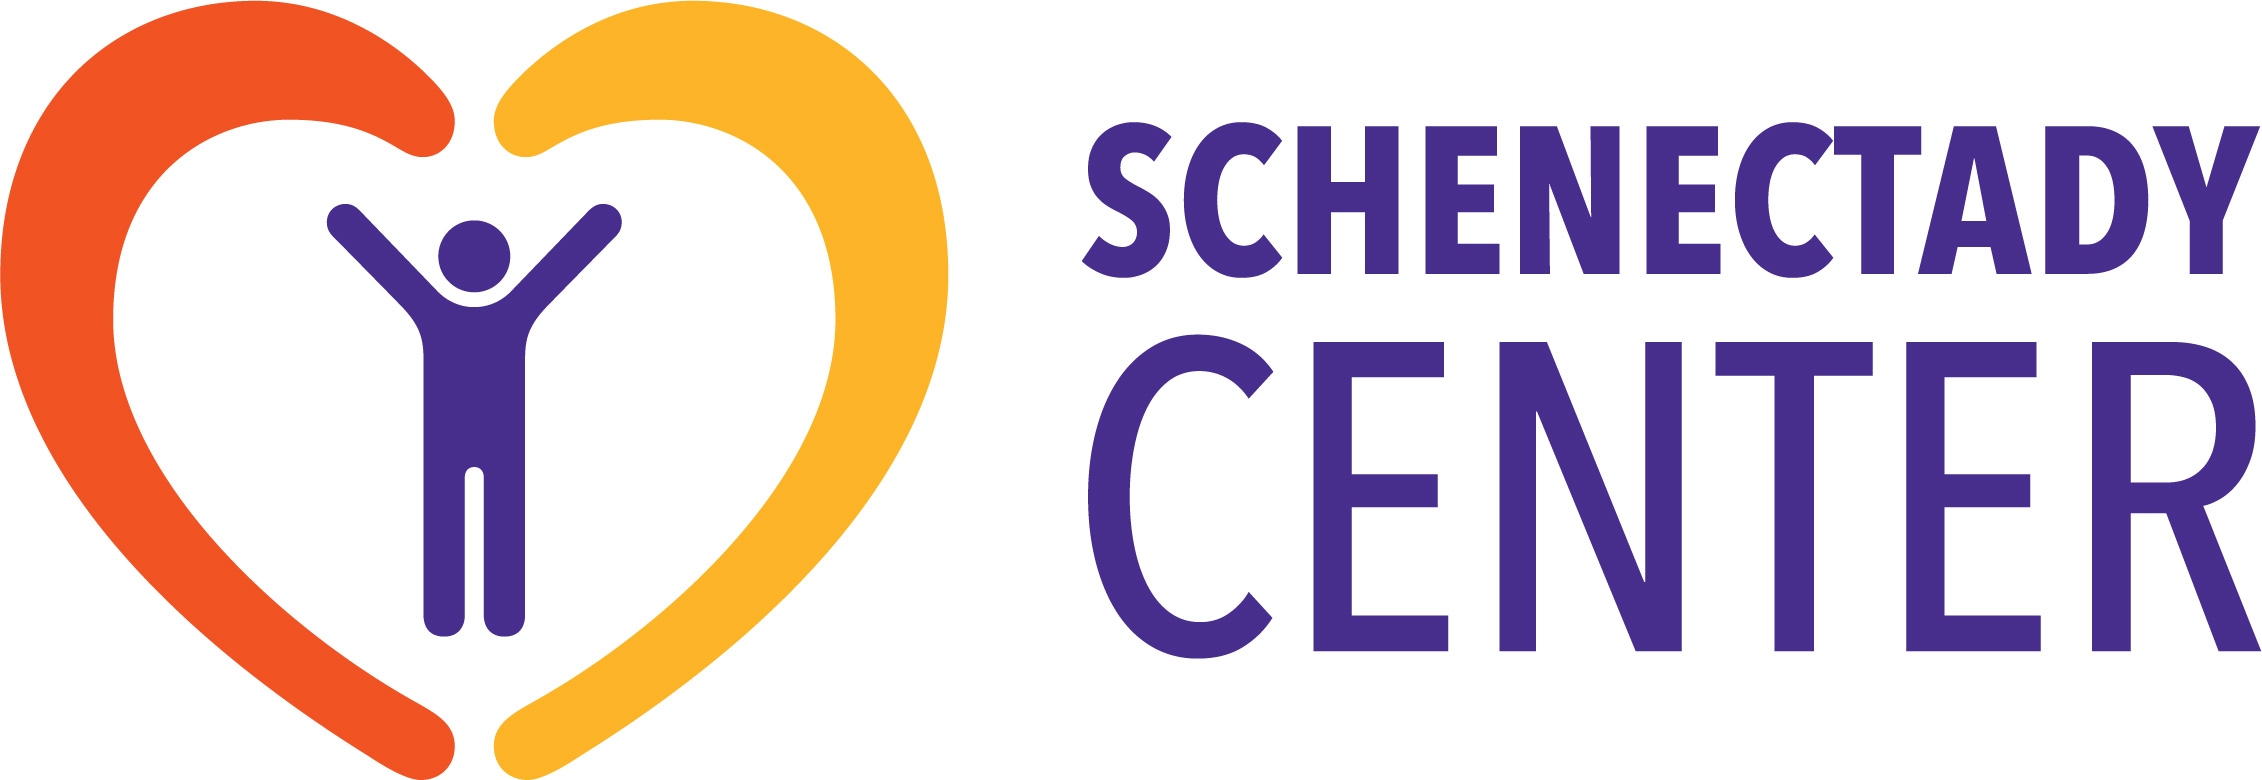 Schenectady Center logo